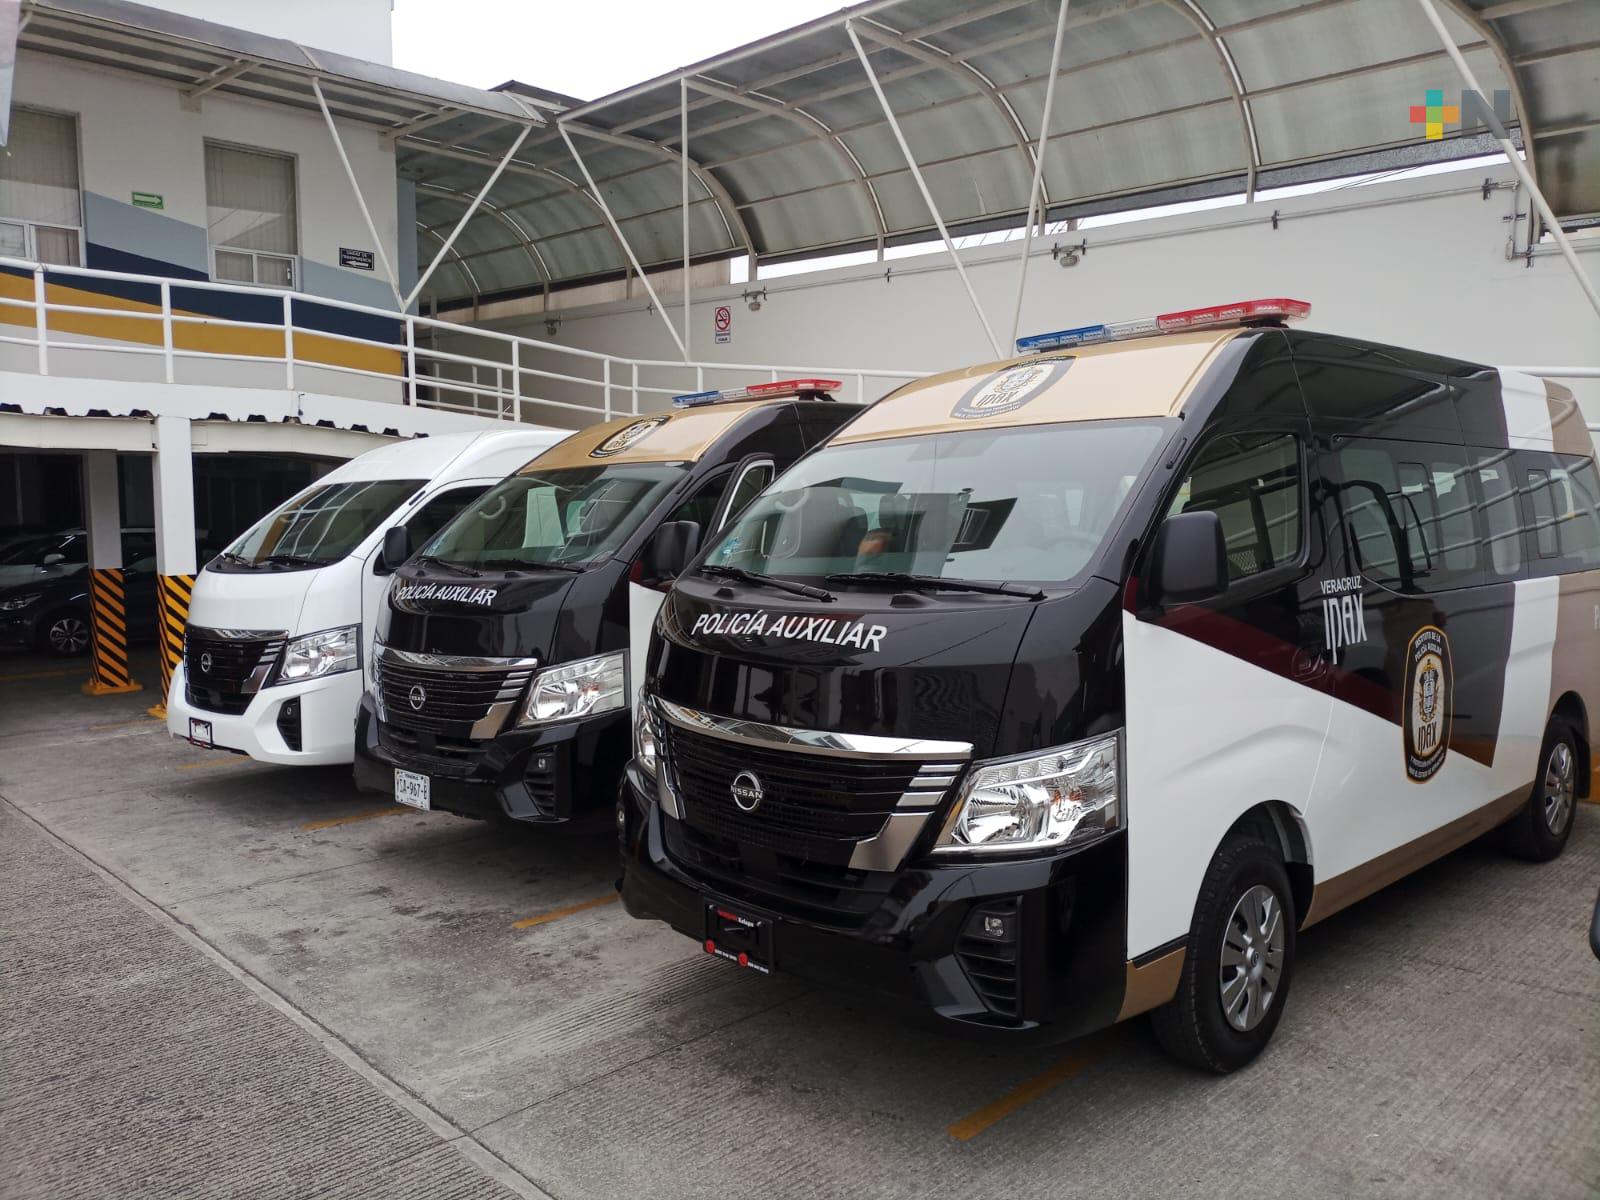 IPAX adquiere unidades vehiculares, optimizará operatividad y servicio